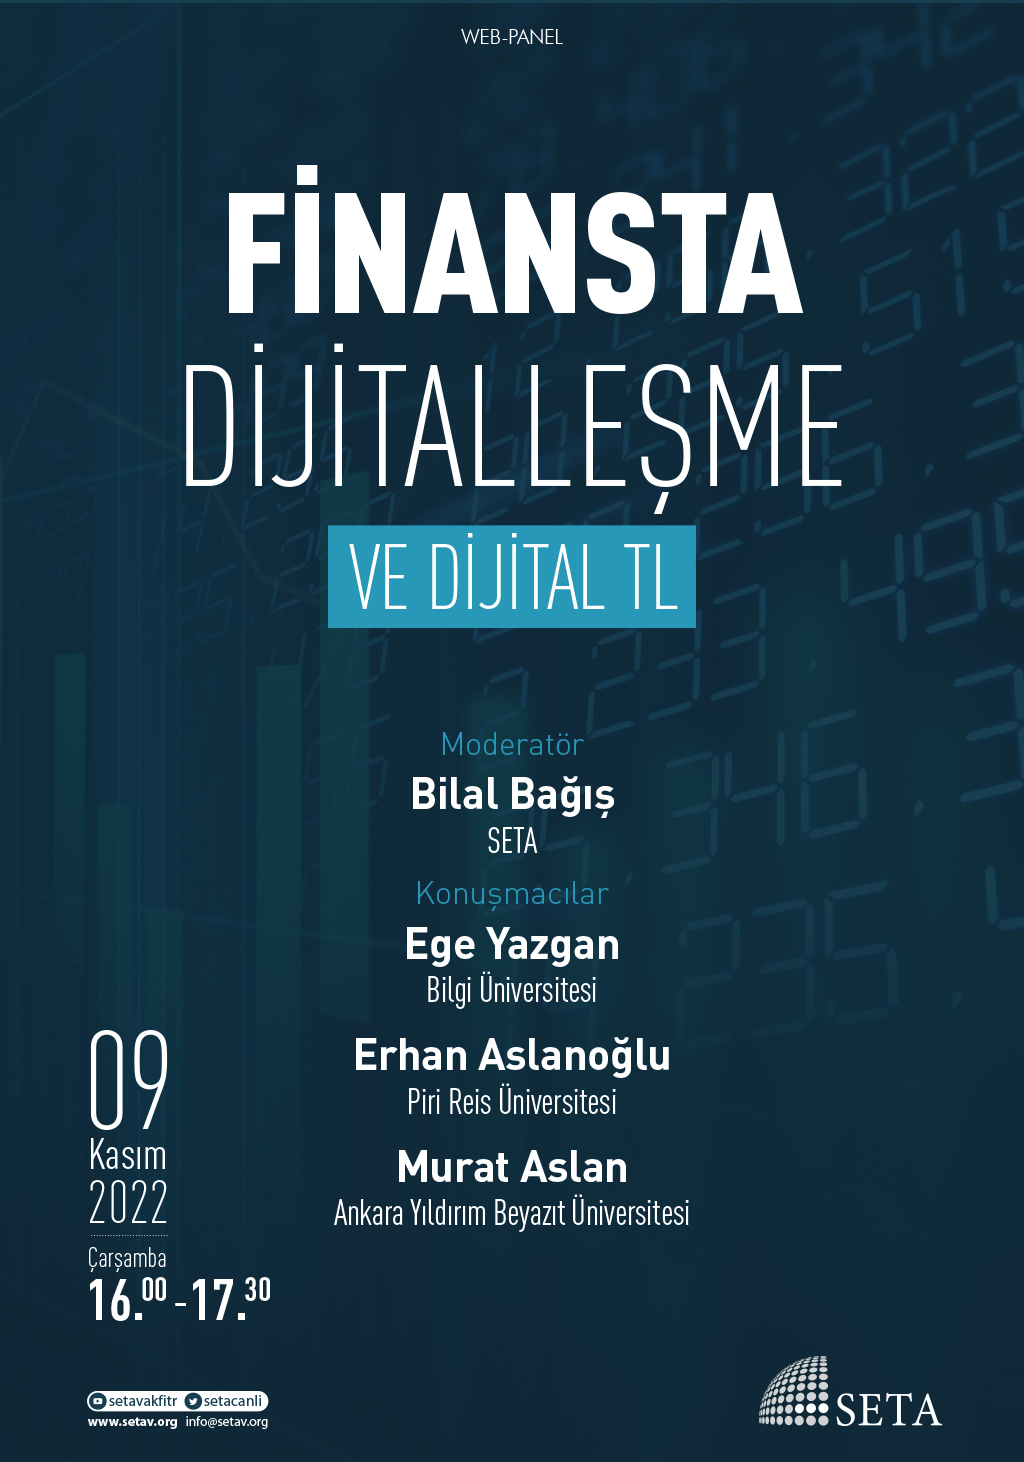 Web Panel: Finansta Dijitalleşme ve Dijital TL